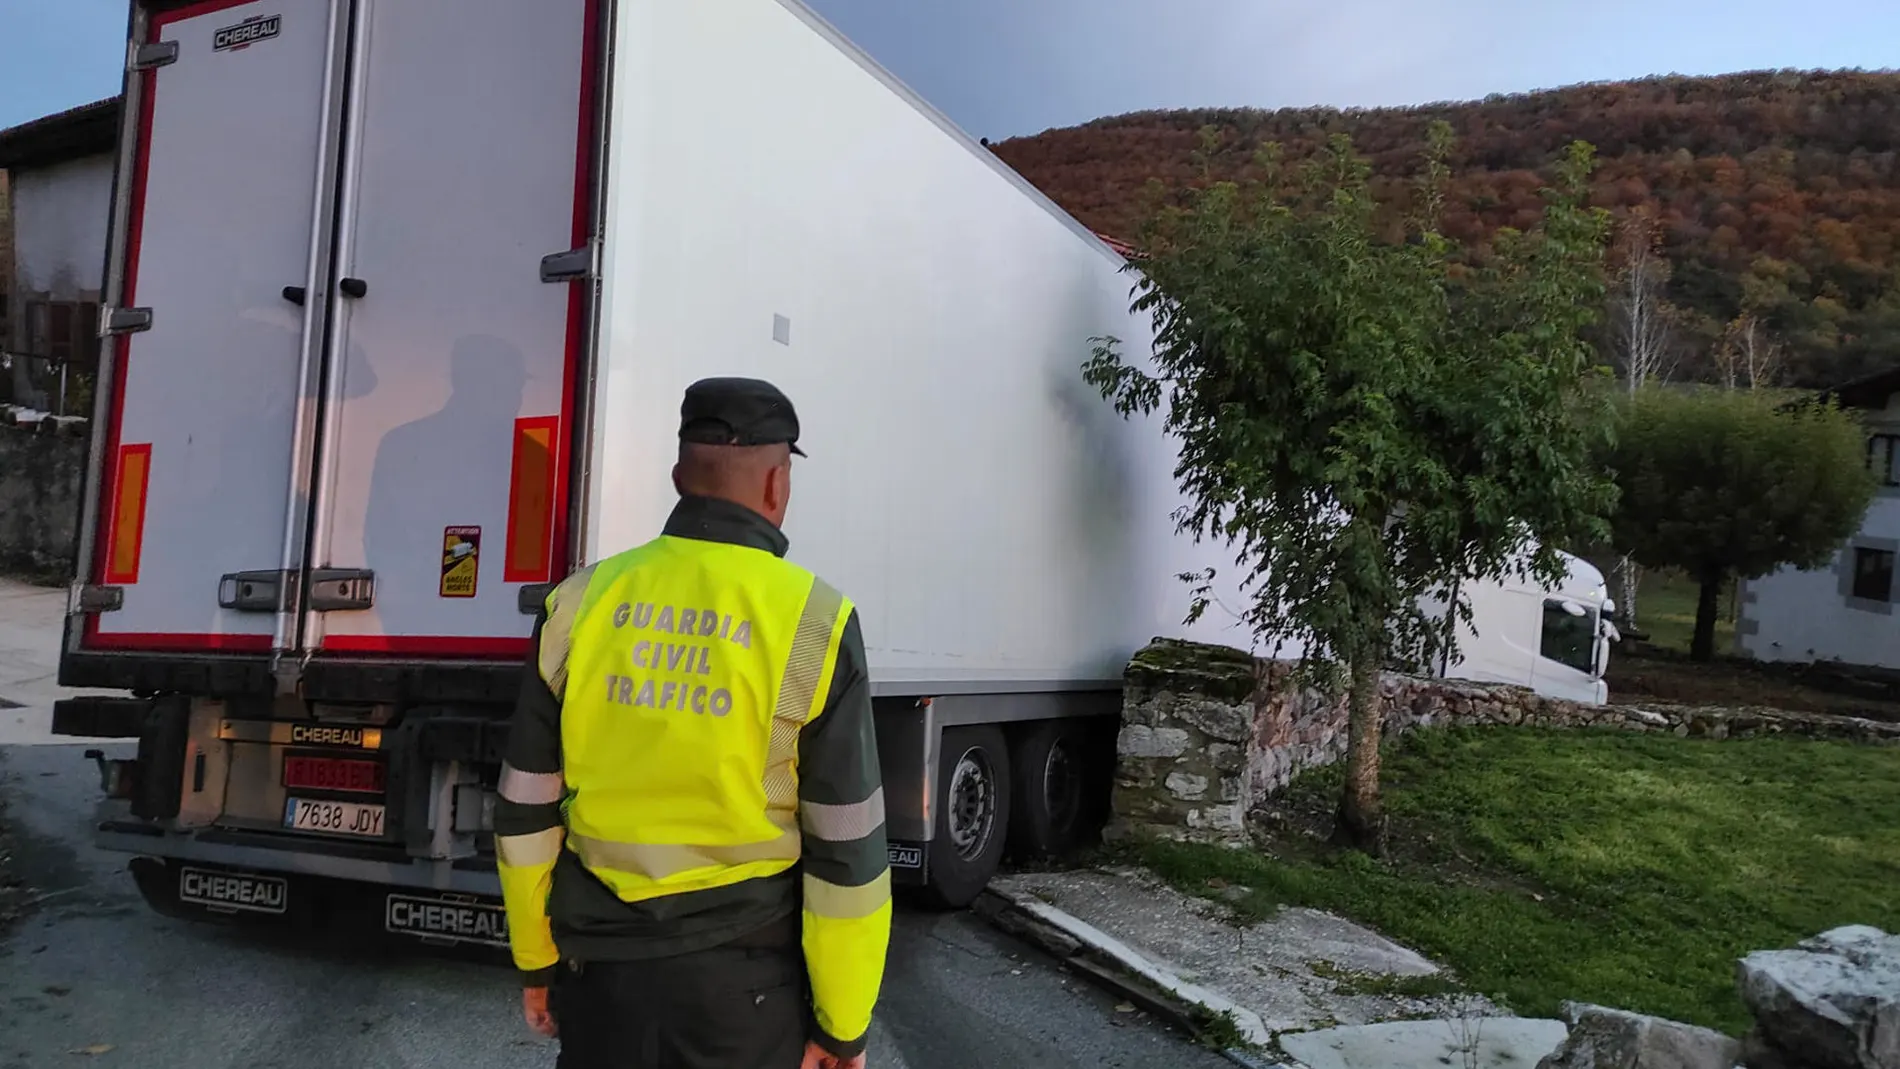 Casi 24 horas atrapado con su camión en Etulain, Navarra